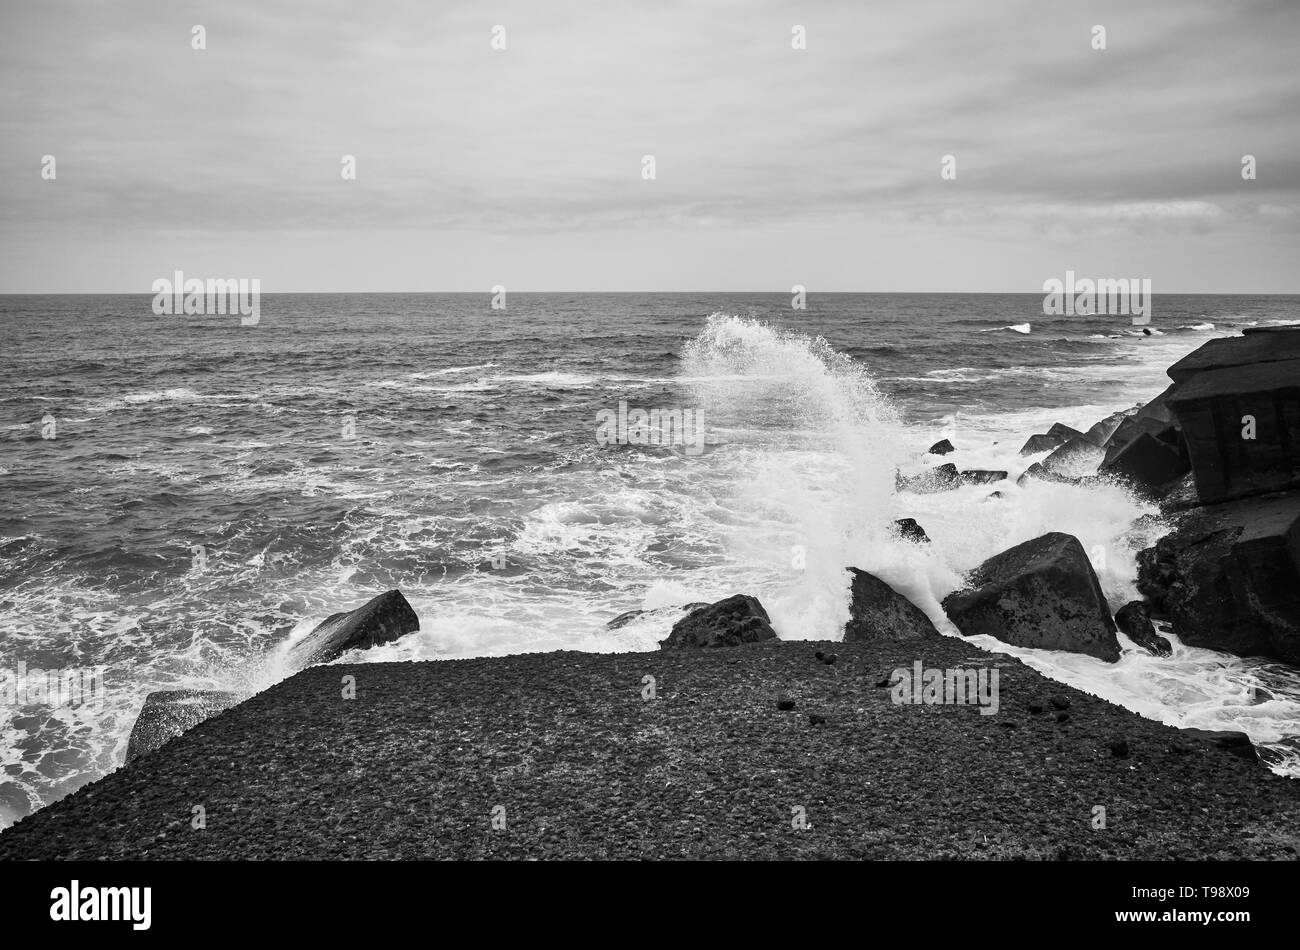 Immagine in bianco e nero di onde che si infrangono sulle rocce, Tenerife, Spagna. Foto Stock